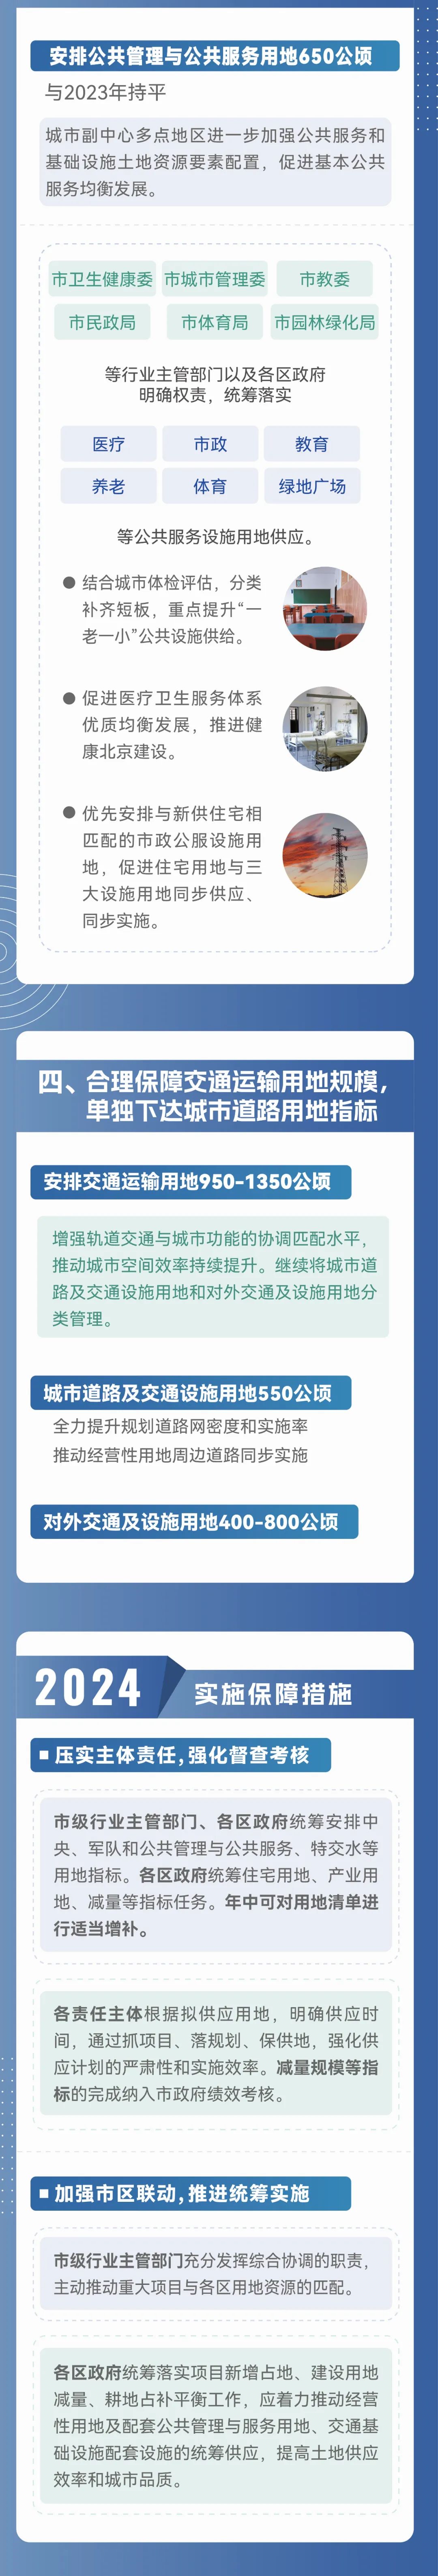 一图读懂 | 北京市2024年度建设用地供应计划